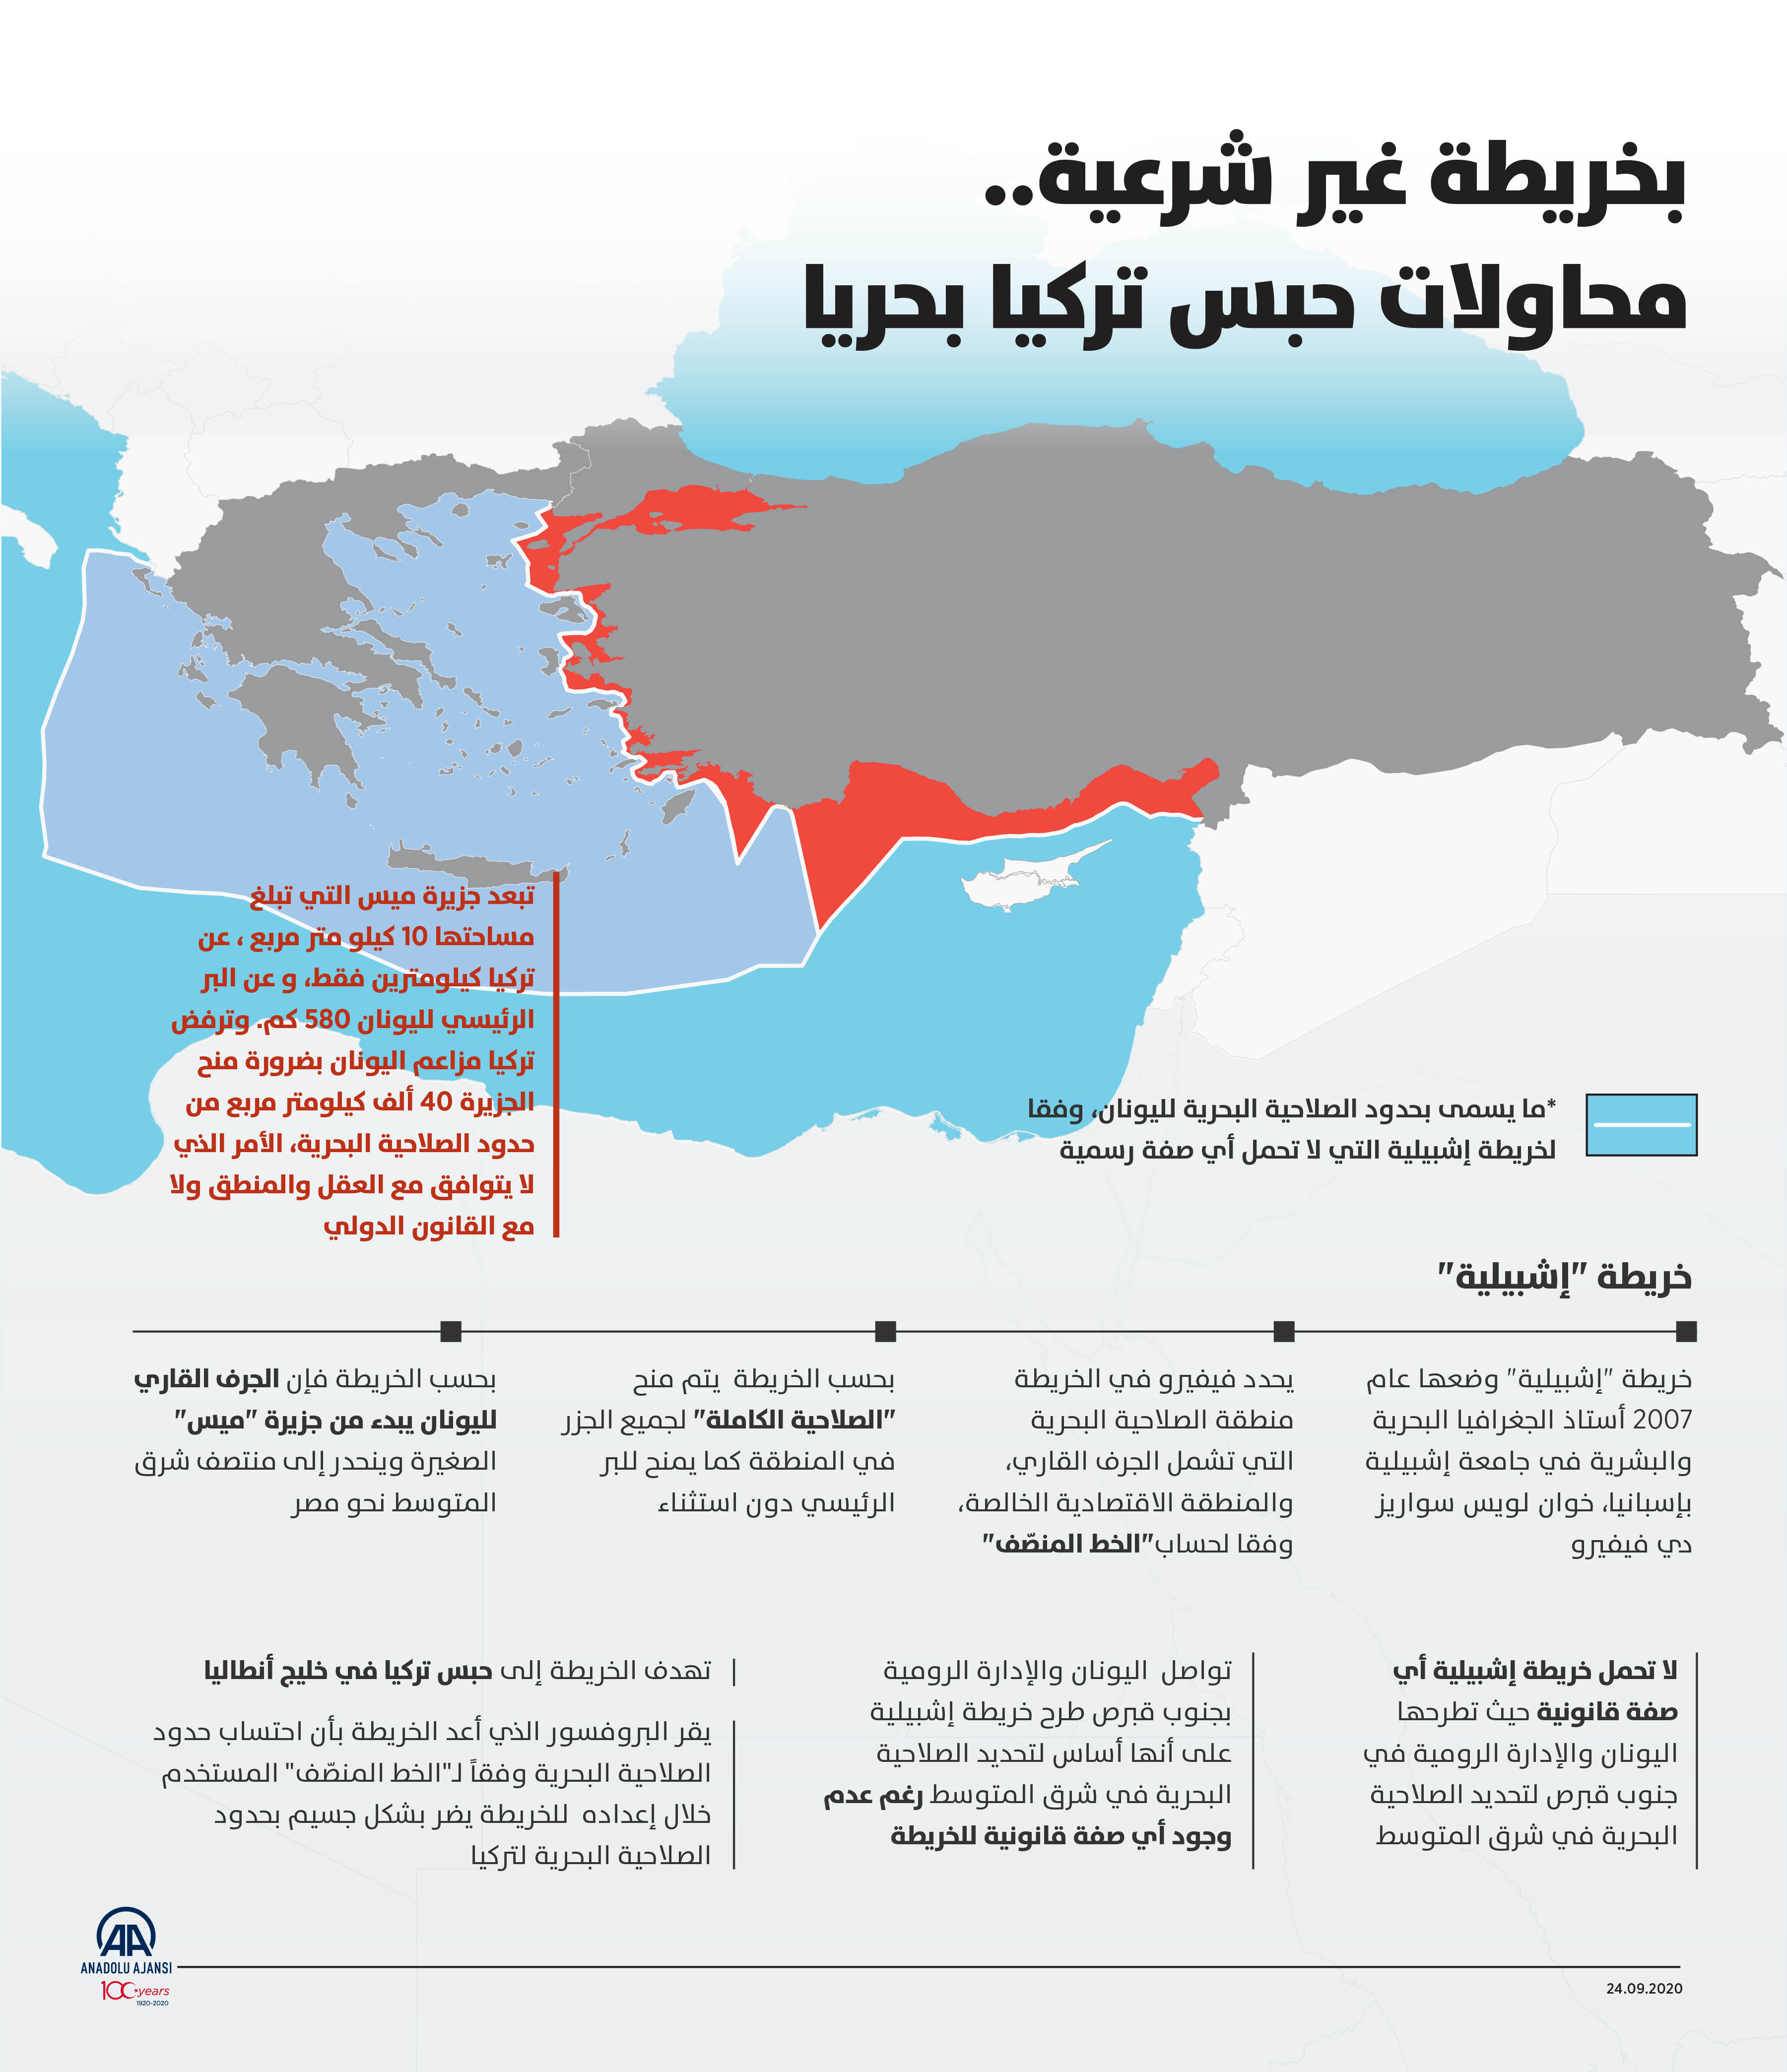 بخريطة غير شرعية..محاولات حبس تركيا بحريا